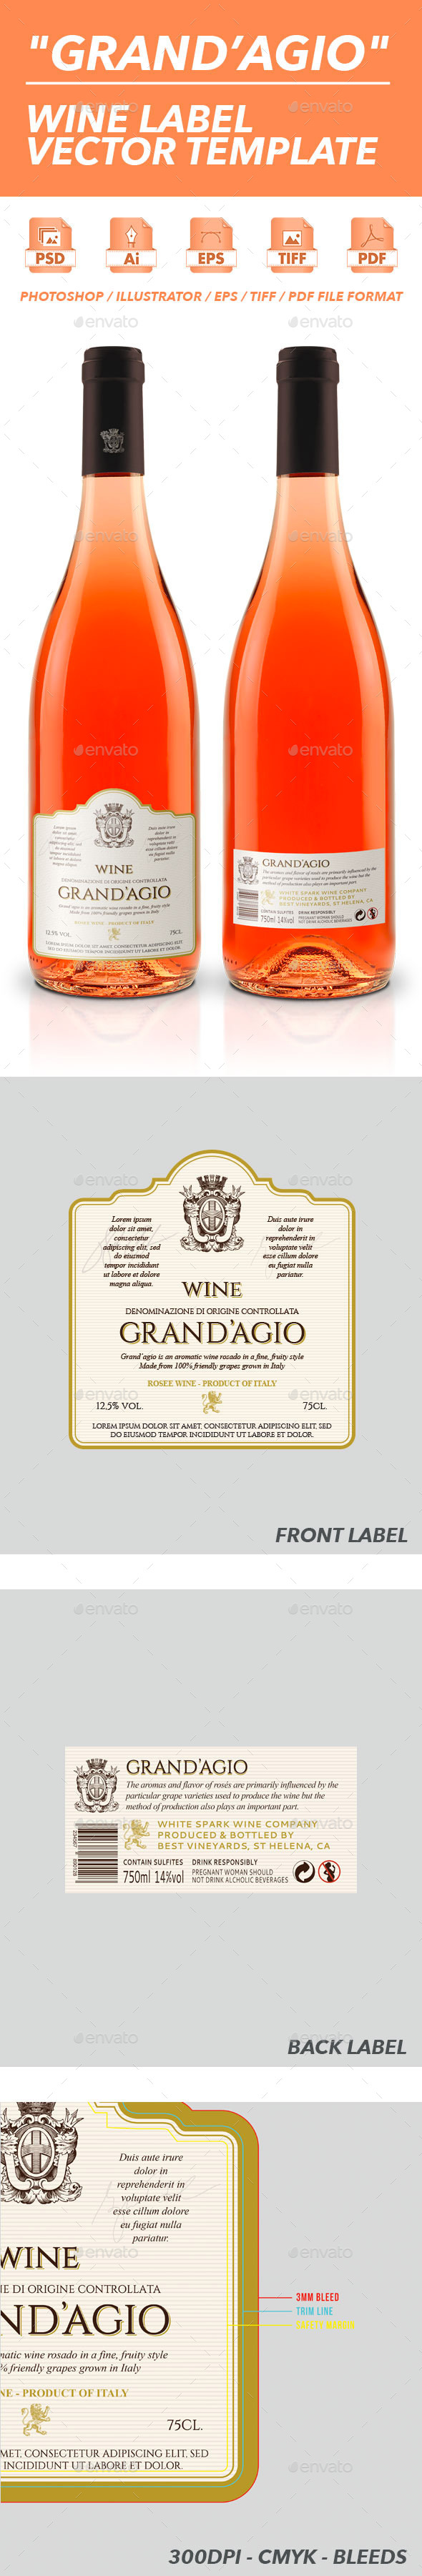 Grand'Agio - Wine Label Vector Template